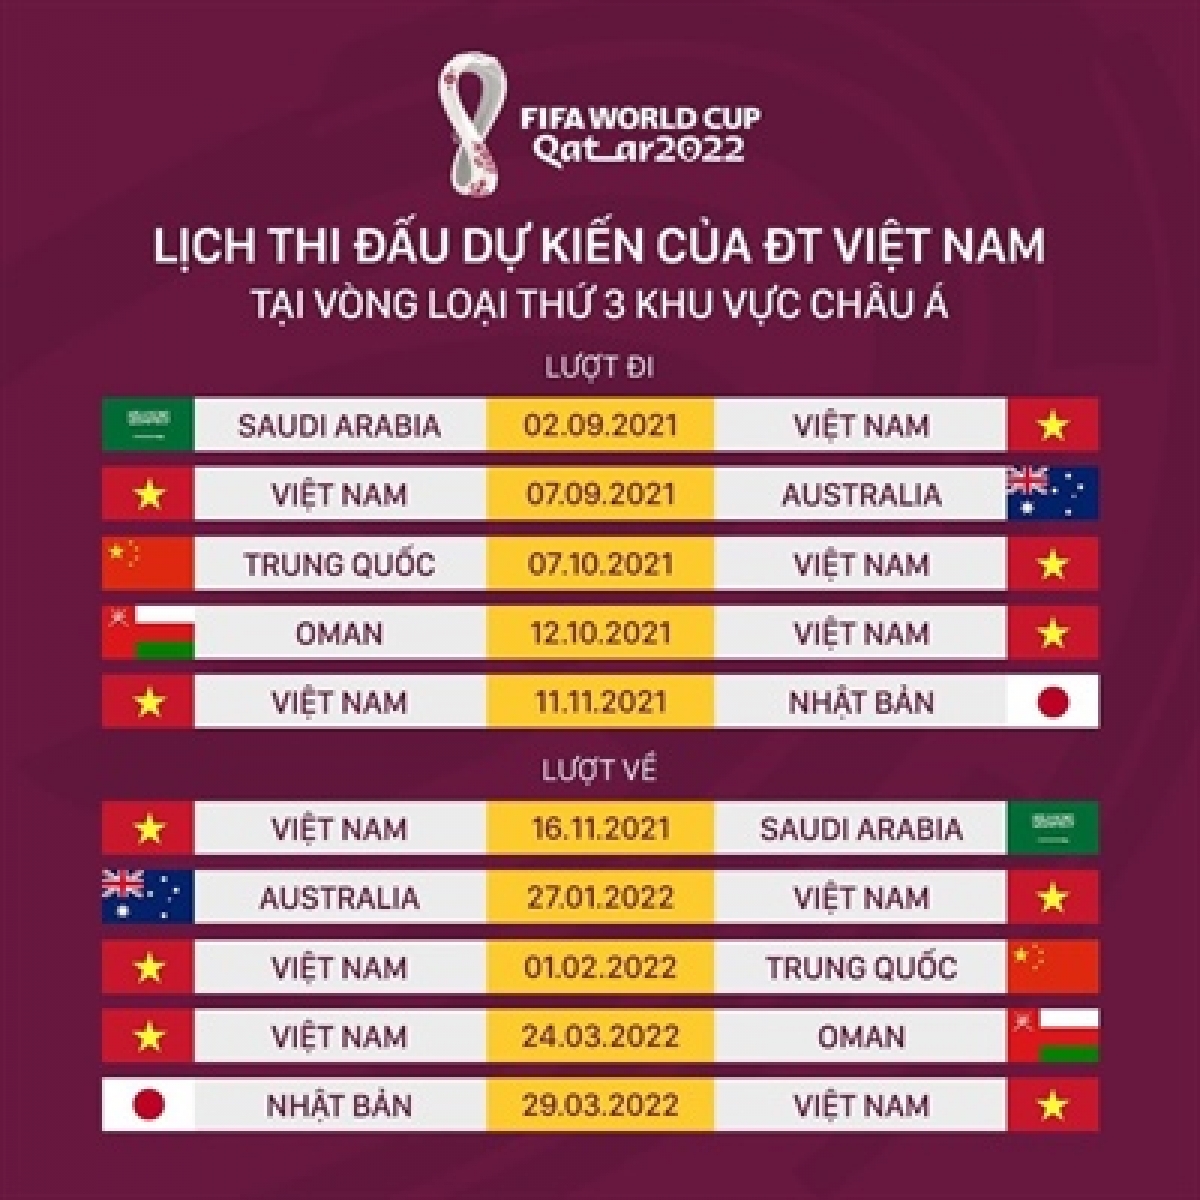 Lịch thi đấu tại bảng B của tuyển Việt Nam